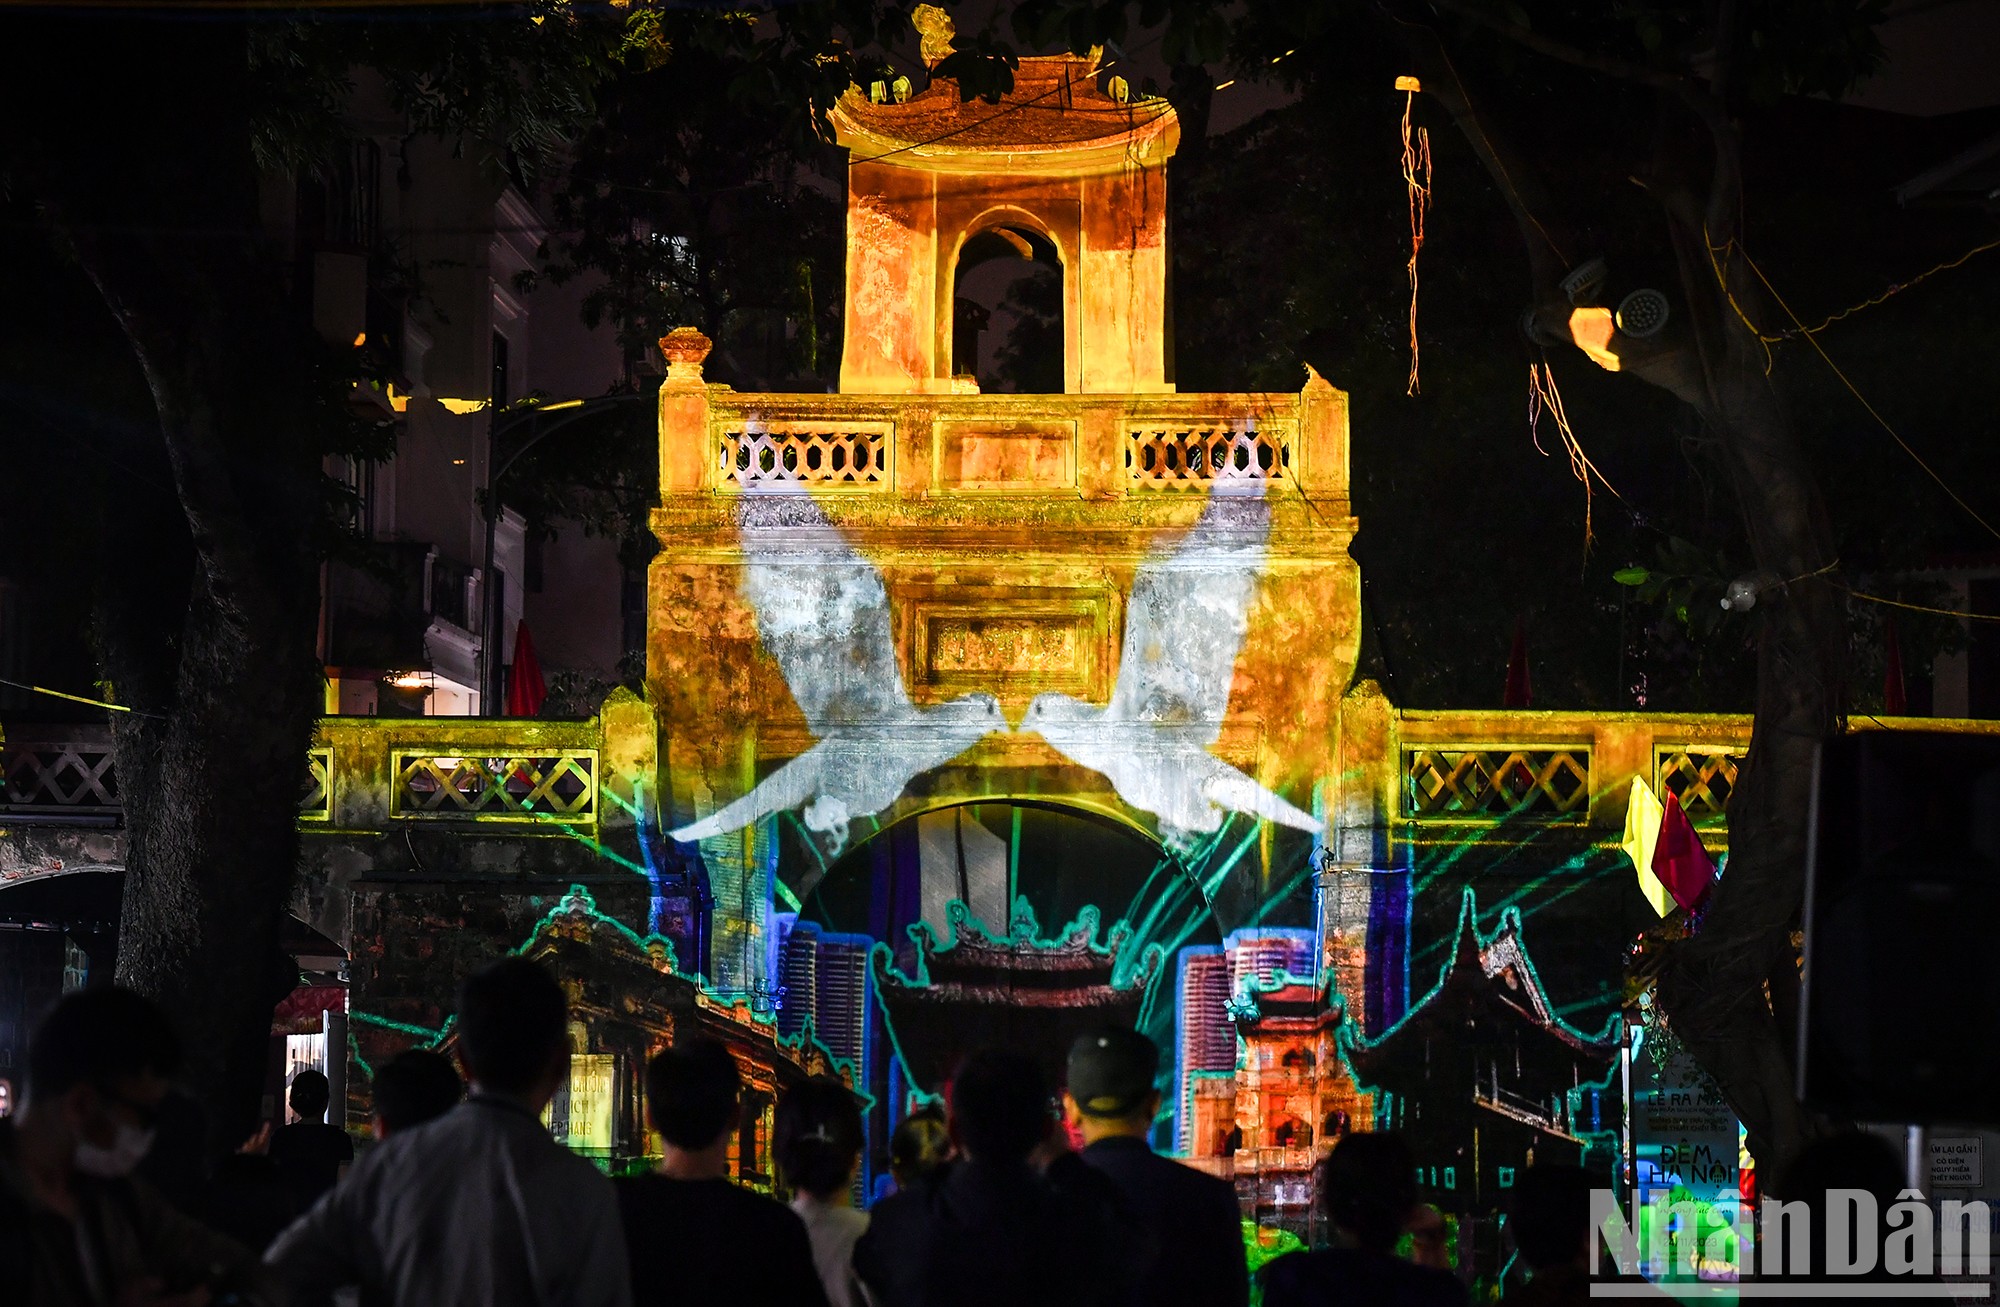 [Foto] Noche de Hanói, punto sensorial de emociones 